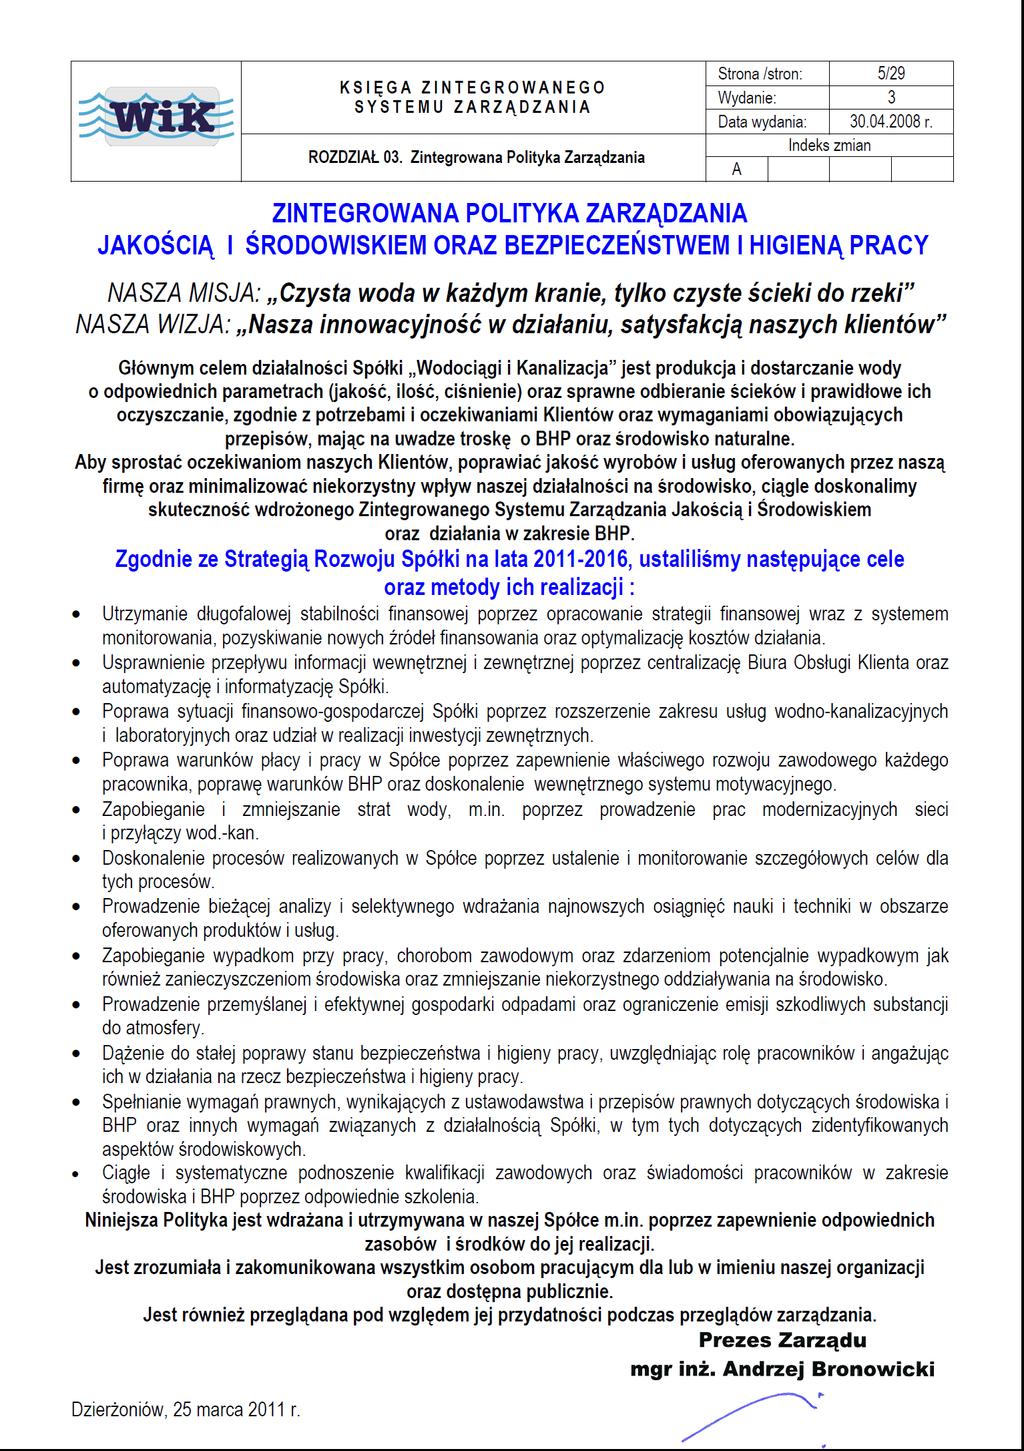 Umowa (Kontrakt), Rozdział 6 Zasady dotyczące BHP, bezpieczeństwa przeciwpożarowego oraz ochrony środowiska, obowiązujące Wykonawców realizujących prace na terenie Spółki WiK w Dzierżoniowie wraz ze